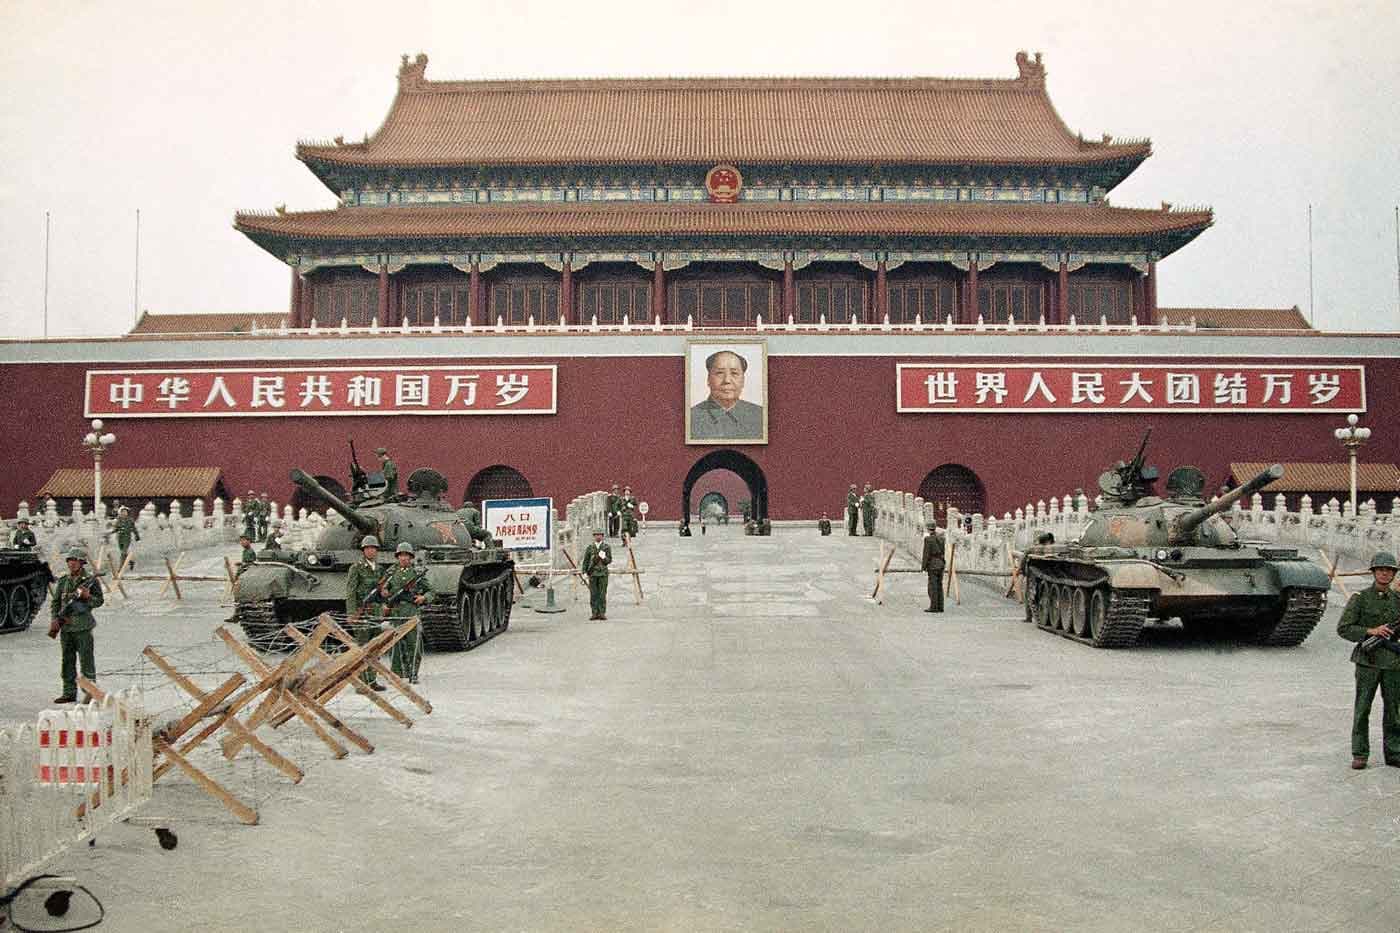 Tiananmen Square militarized 1989